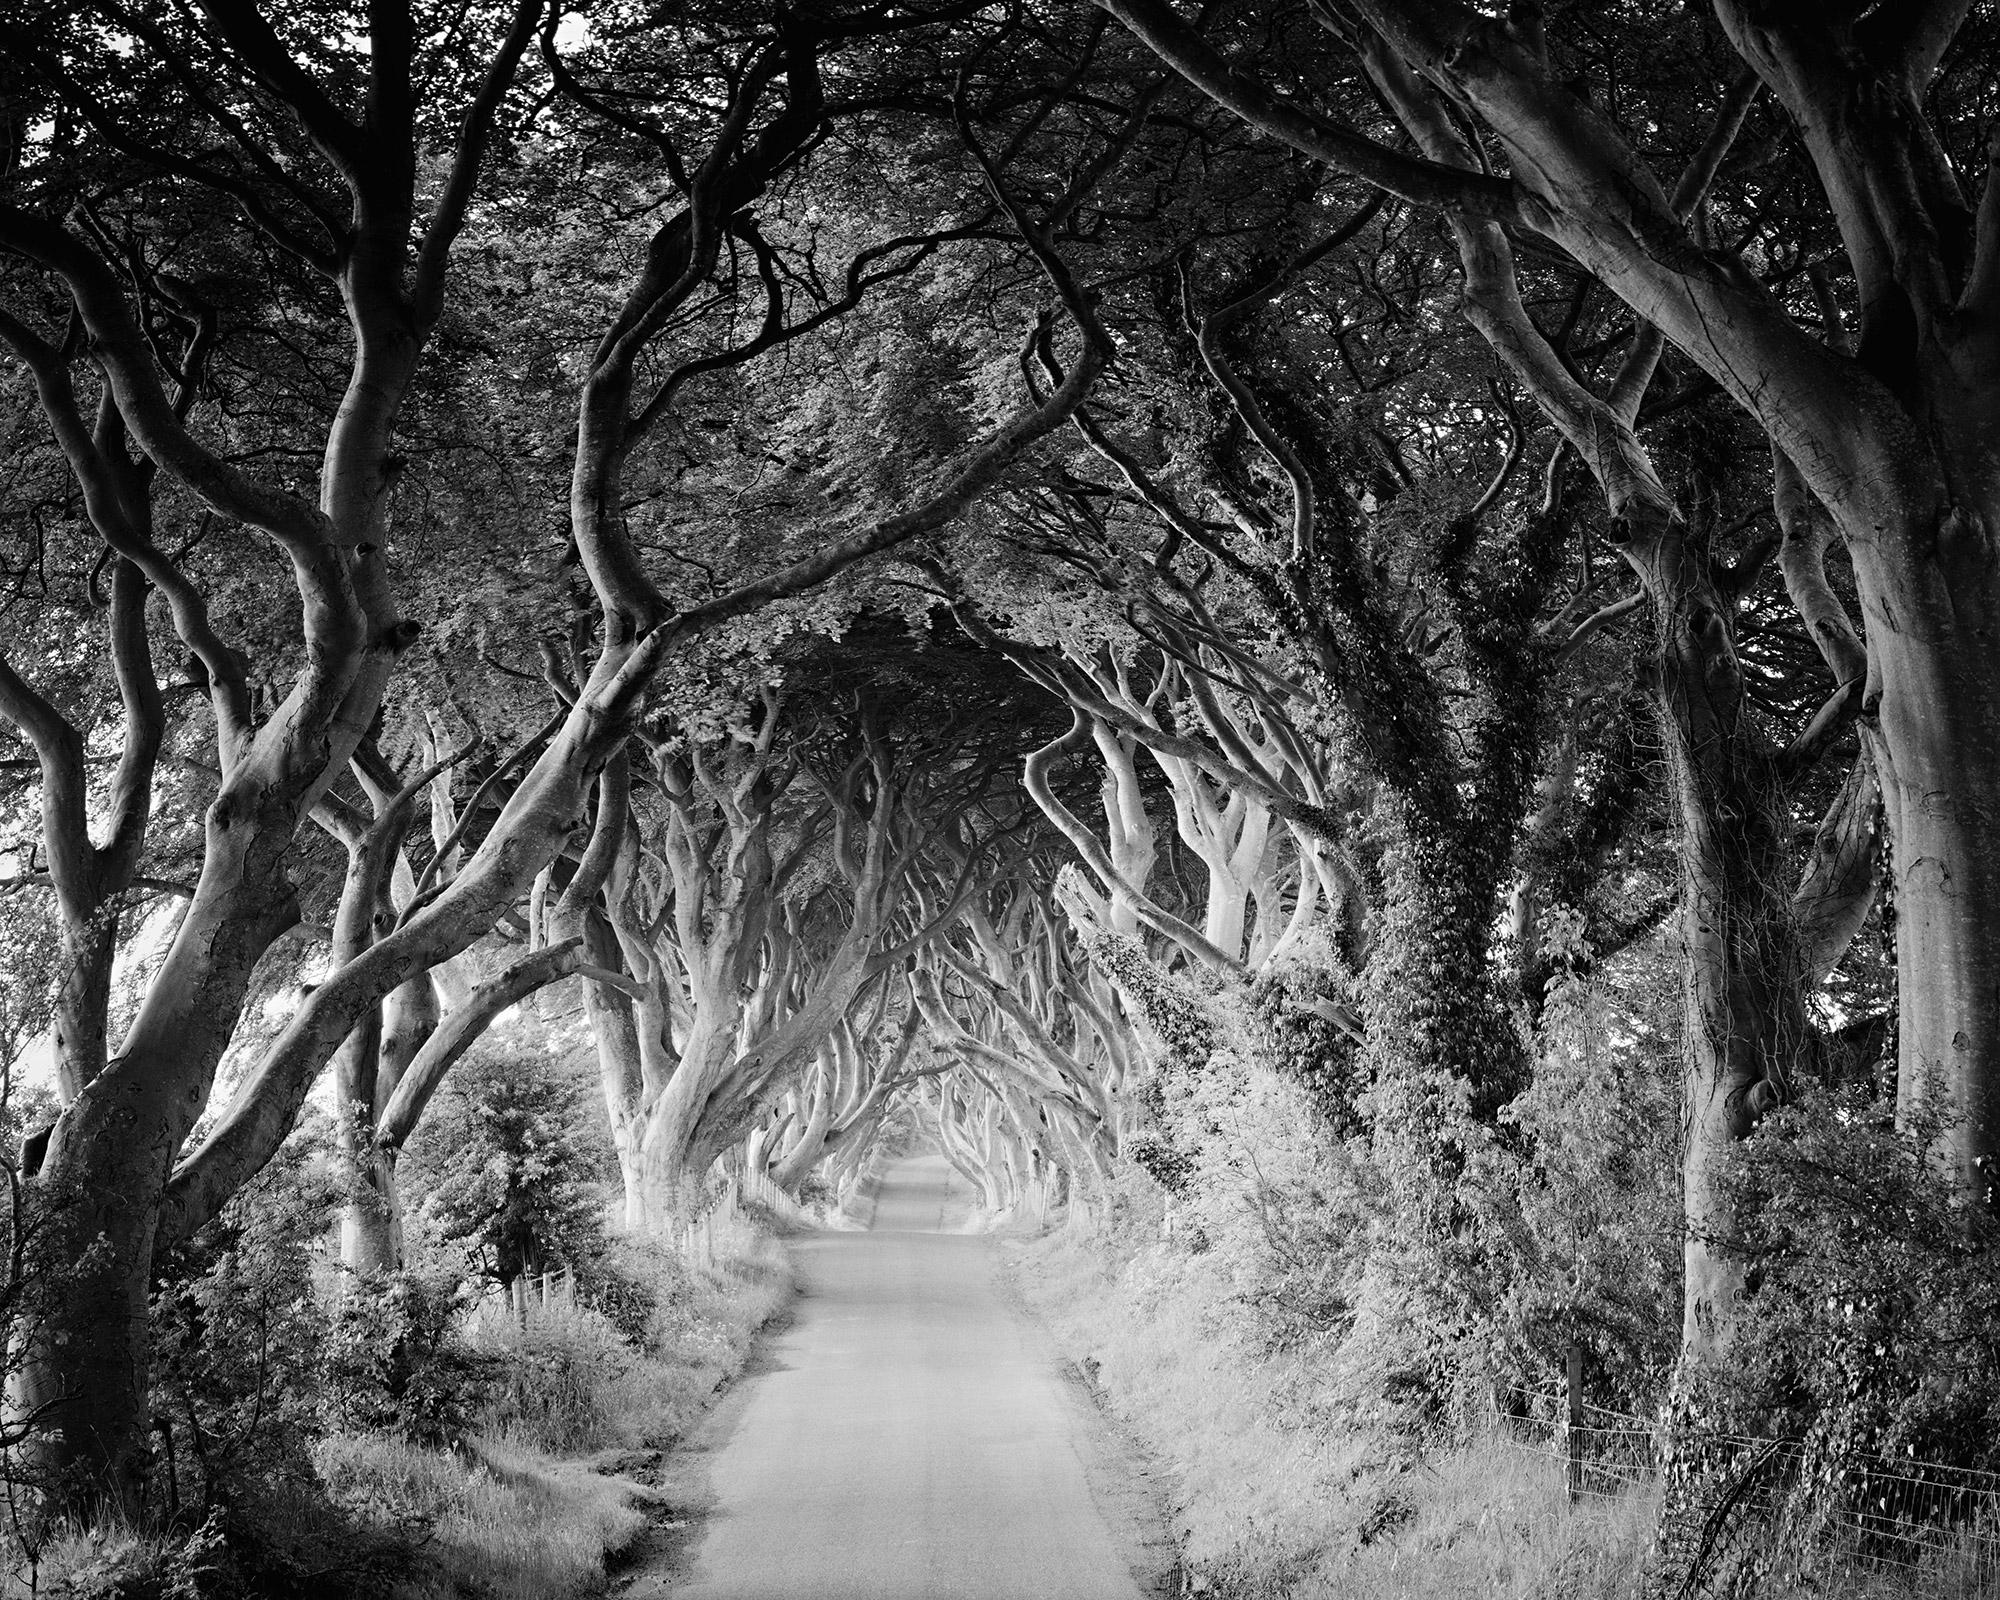 Gerald Berghammer Landscape Photograph – The Dark Hedges, Buchenbäume, Irland, Schwarz-Weiß-Fotografiedruck